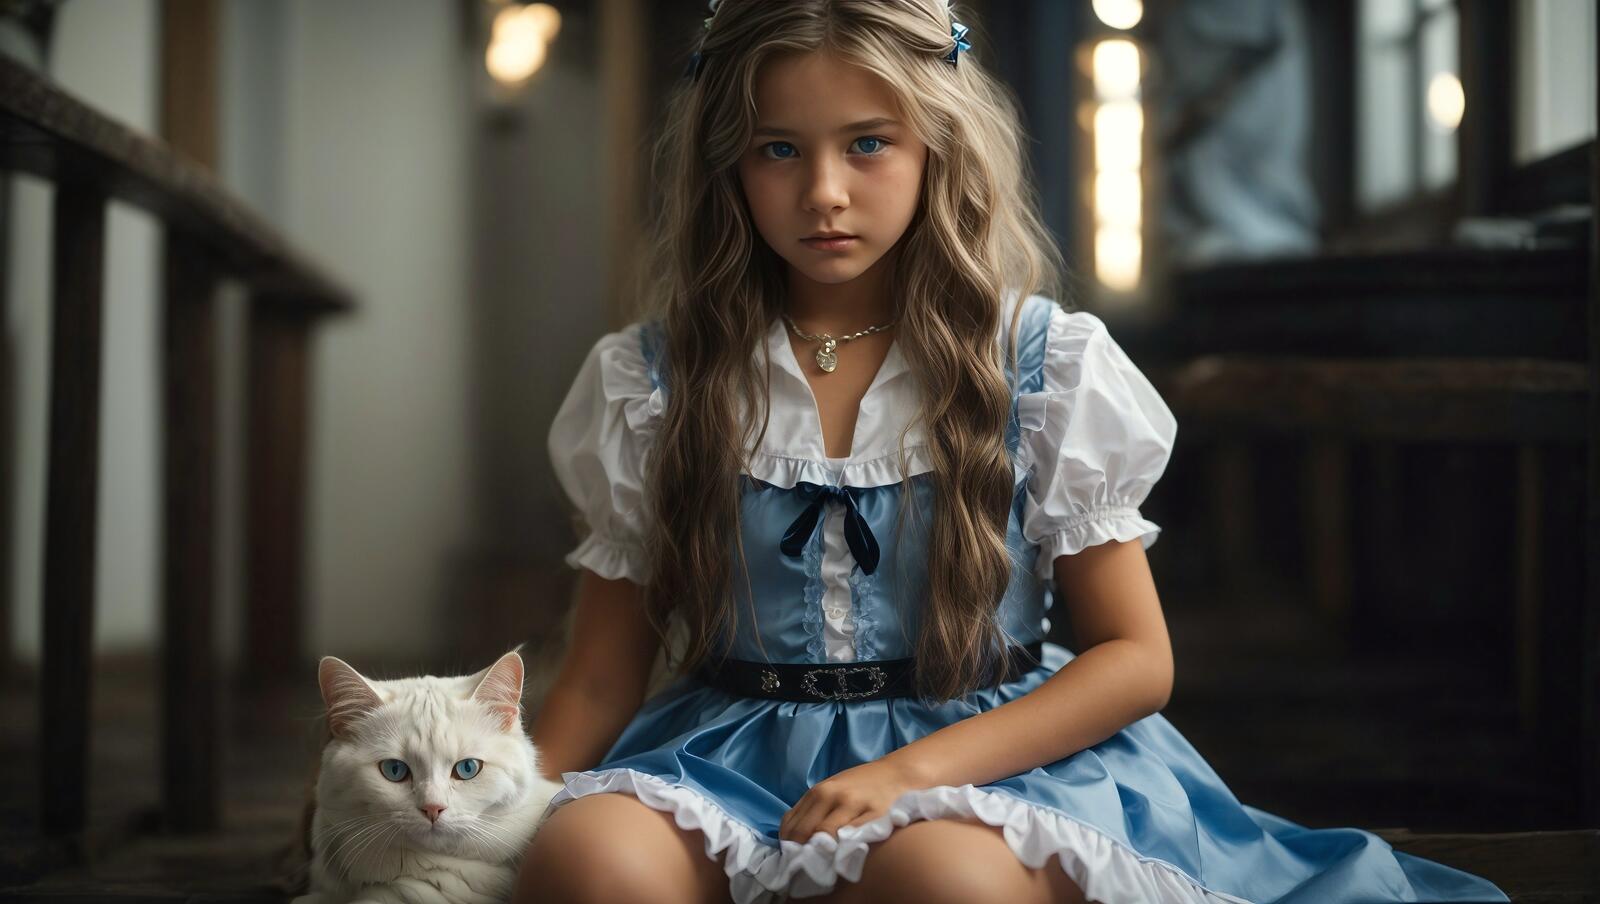 Бесплатное фото Молодая девушка в старинном костюме сидит рядом с кошкой